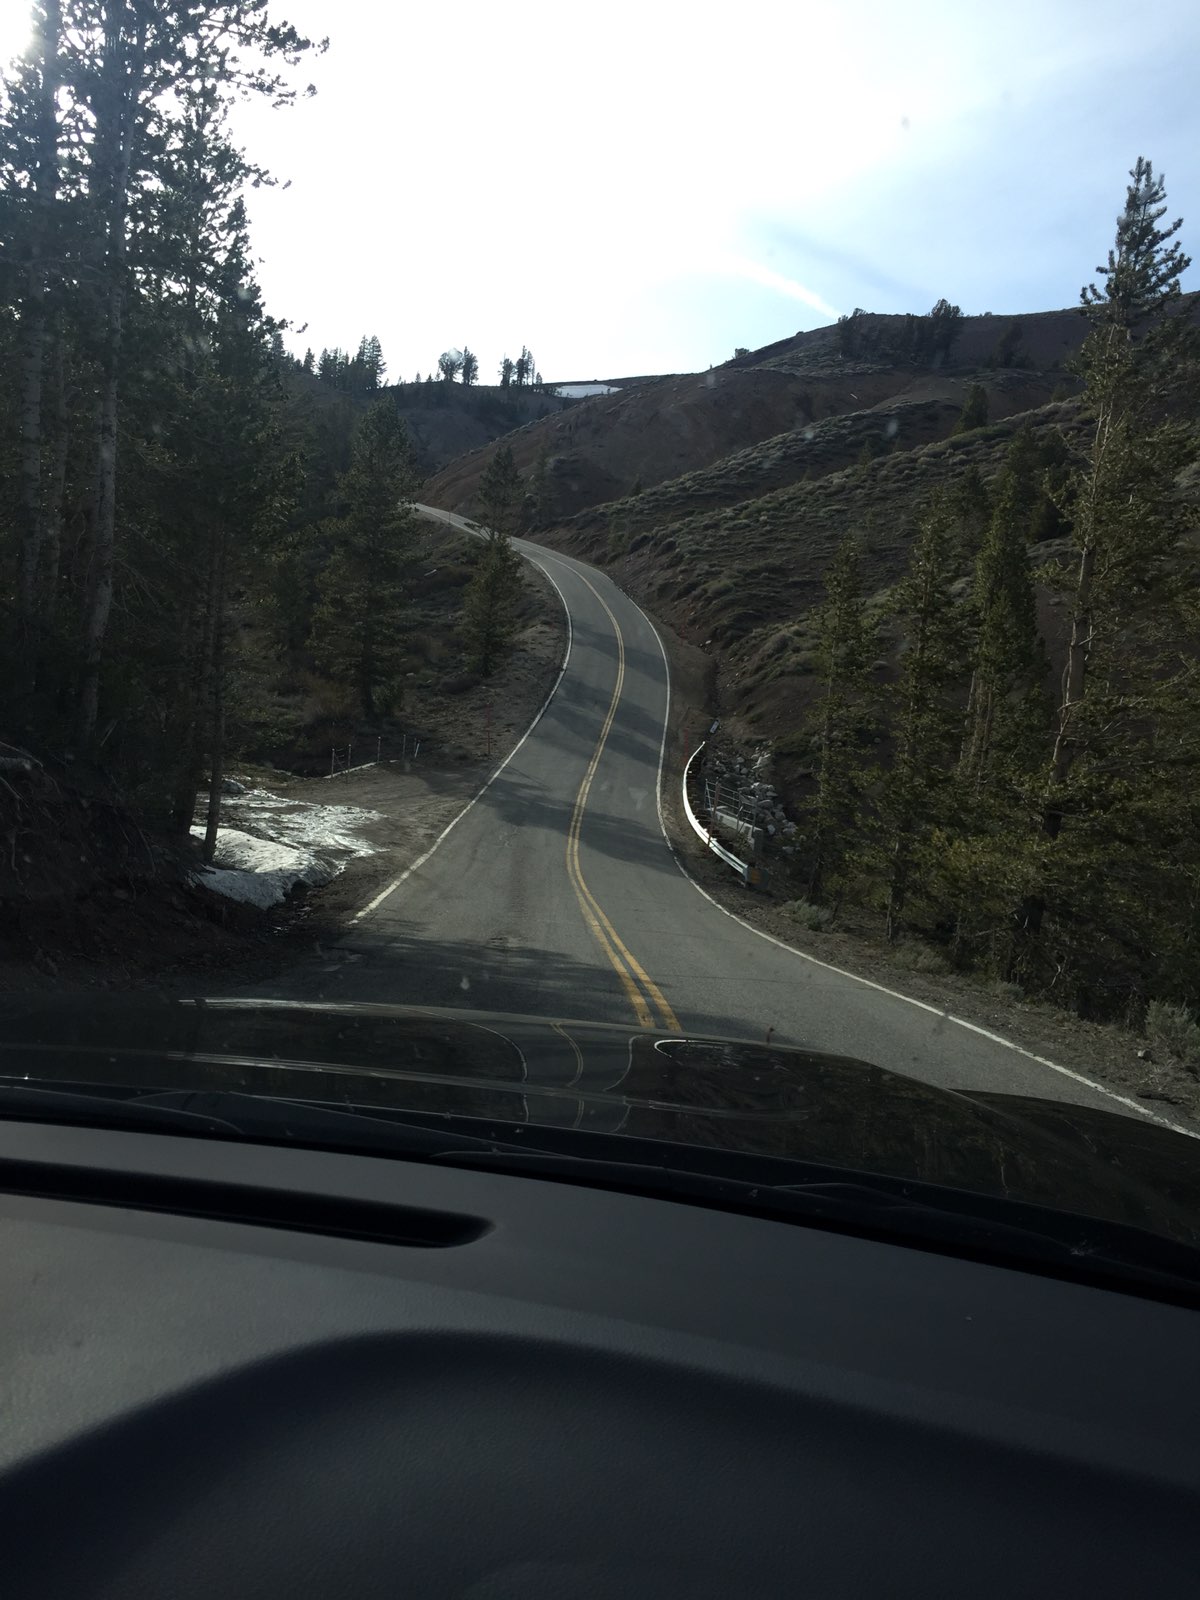 自驾绝对是这次Yosemite之行的一大乐趣来源 下过赛道 飙过街车